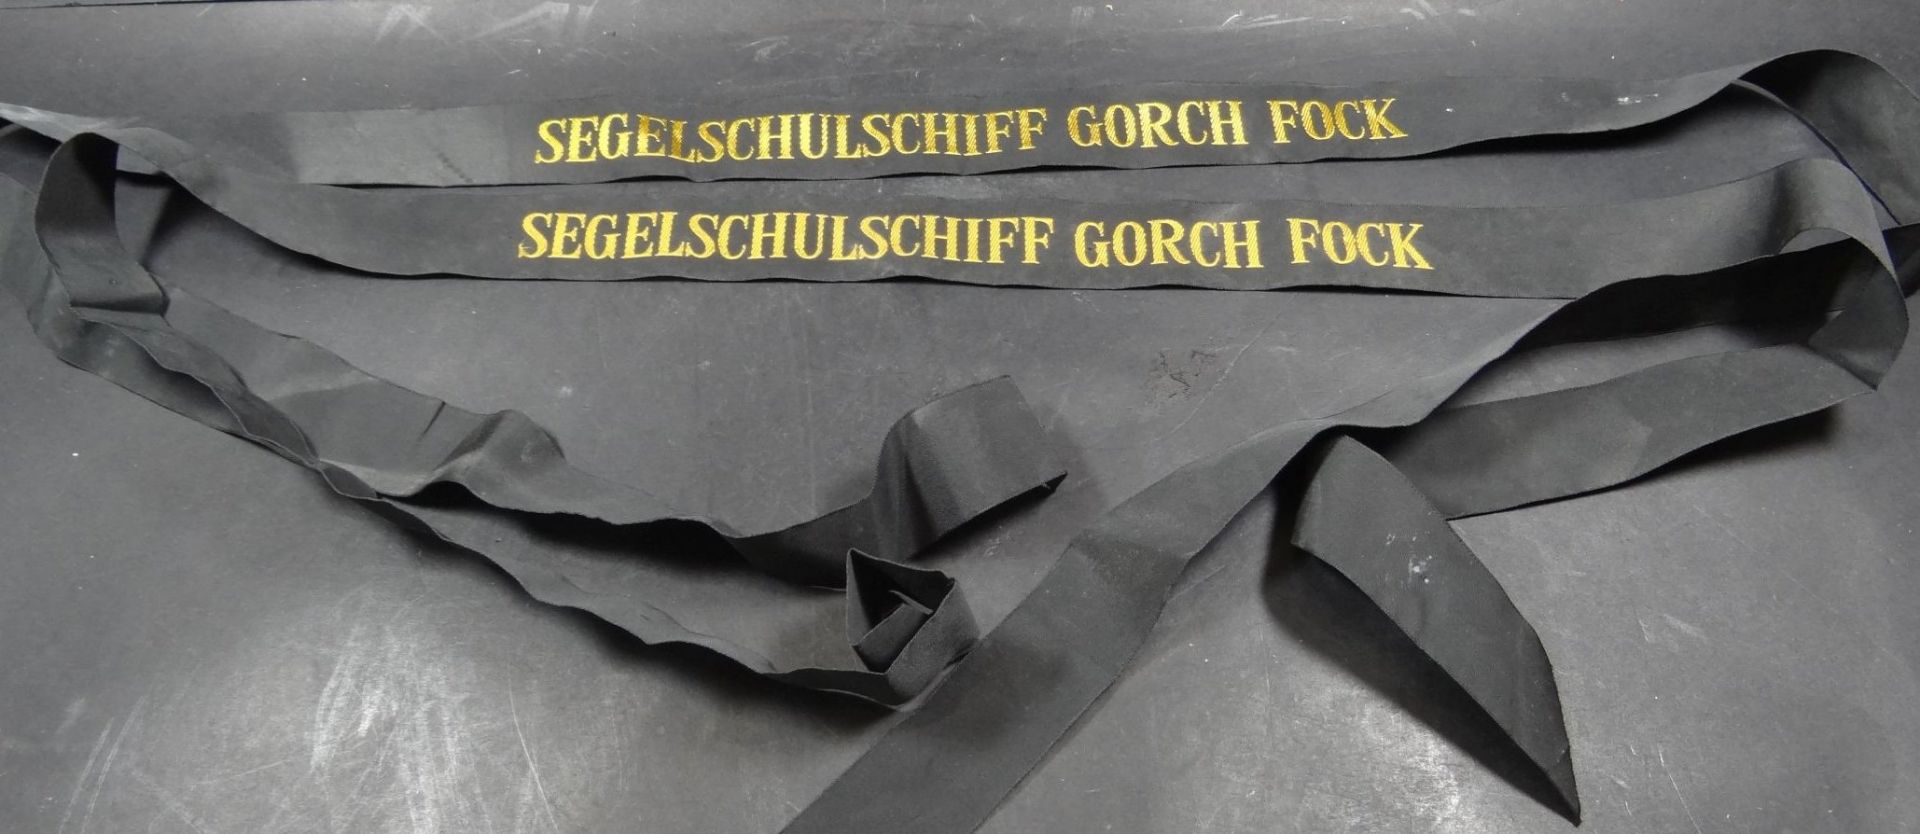 2x Mützenbänder, "Segelschulschiff Gorch Fock"L-130 cm- - -22.61 % buyer's premium on the hammer - Bild 3 aus 3